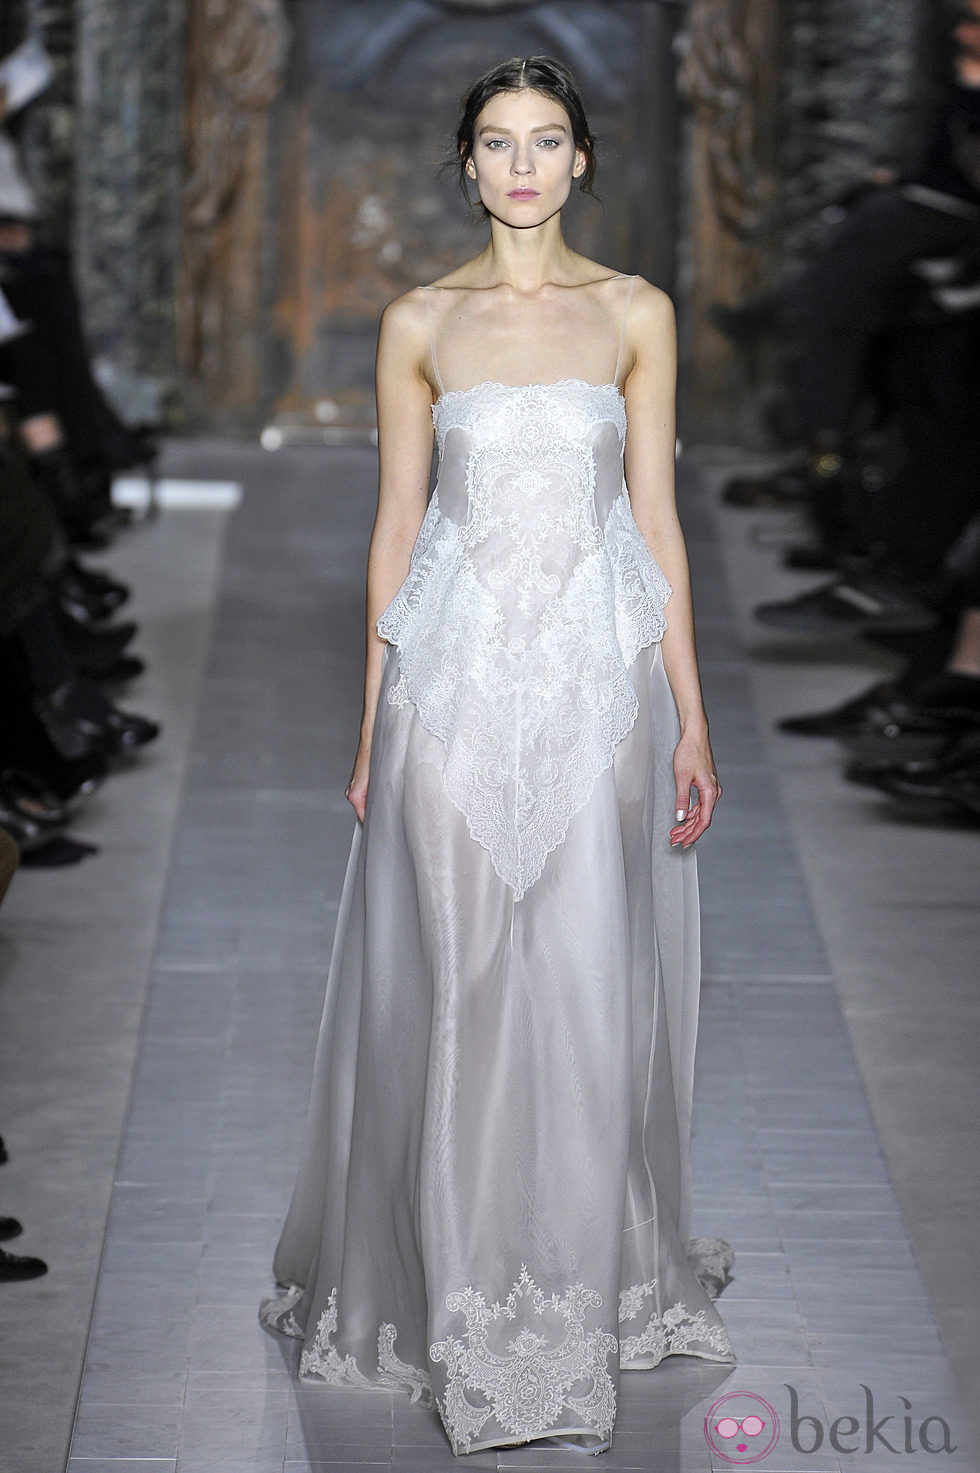 Vestido blanco de tirante fino de la colección primavera/verano 2013 de Valentino en la Semana de la Alta Costura de París